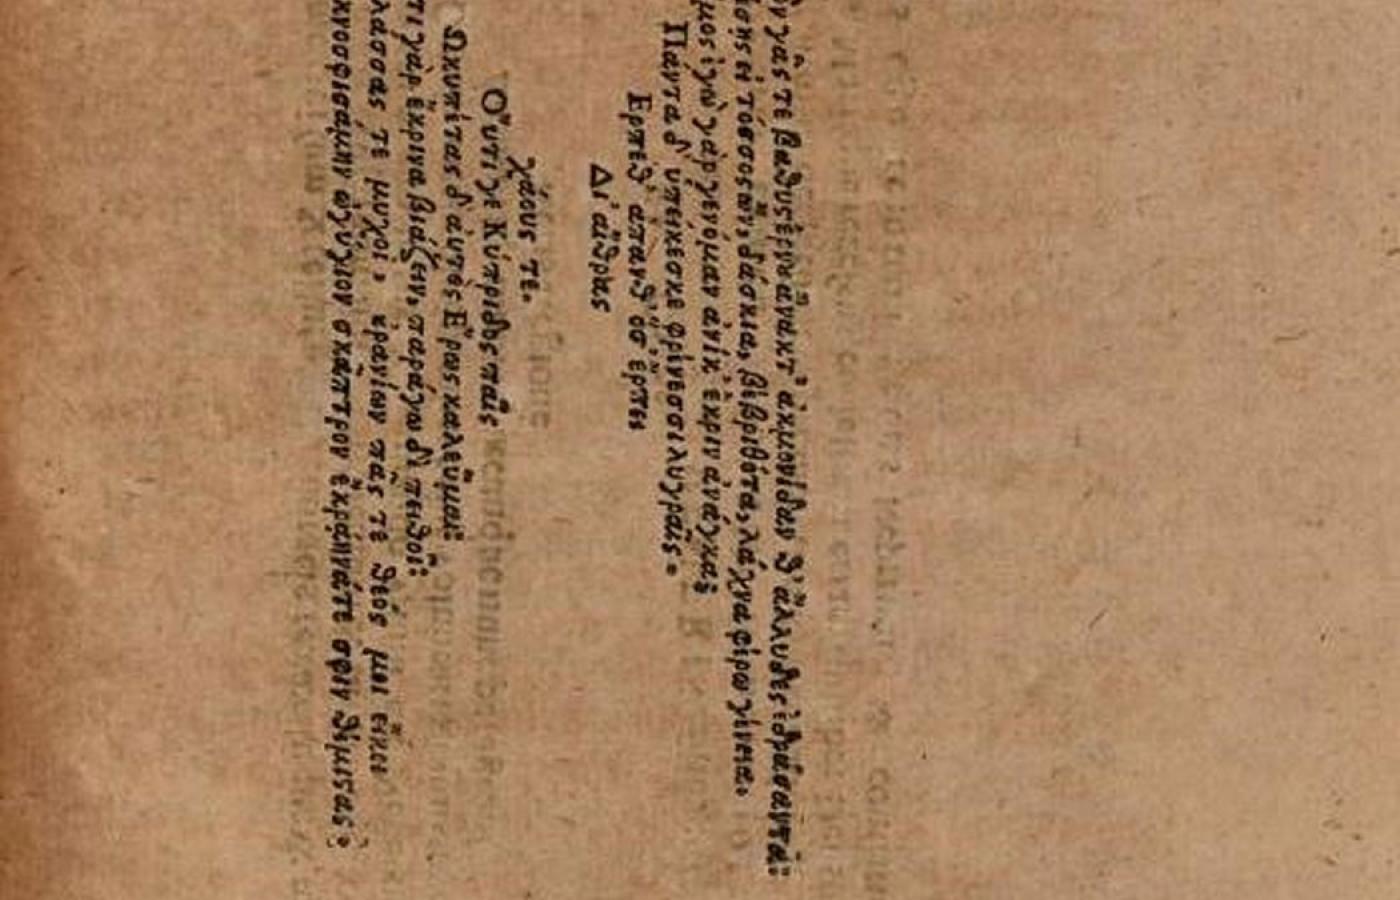 Wiersz Simasza z Rodos w kształcie skrzydeł Erosa.